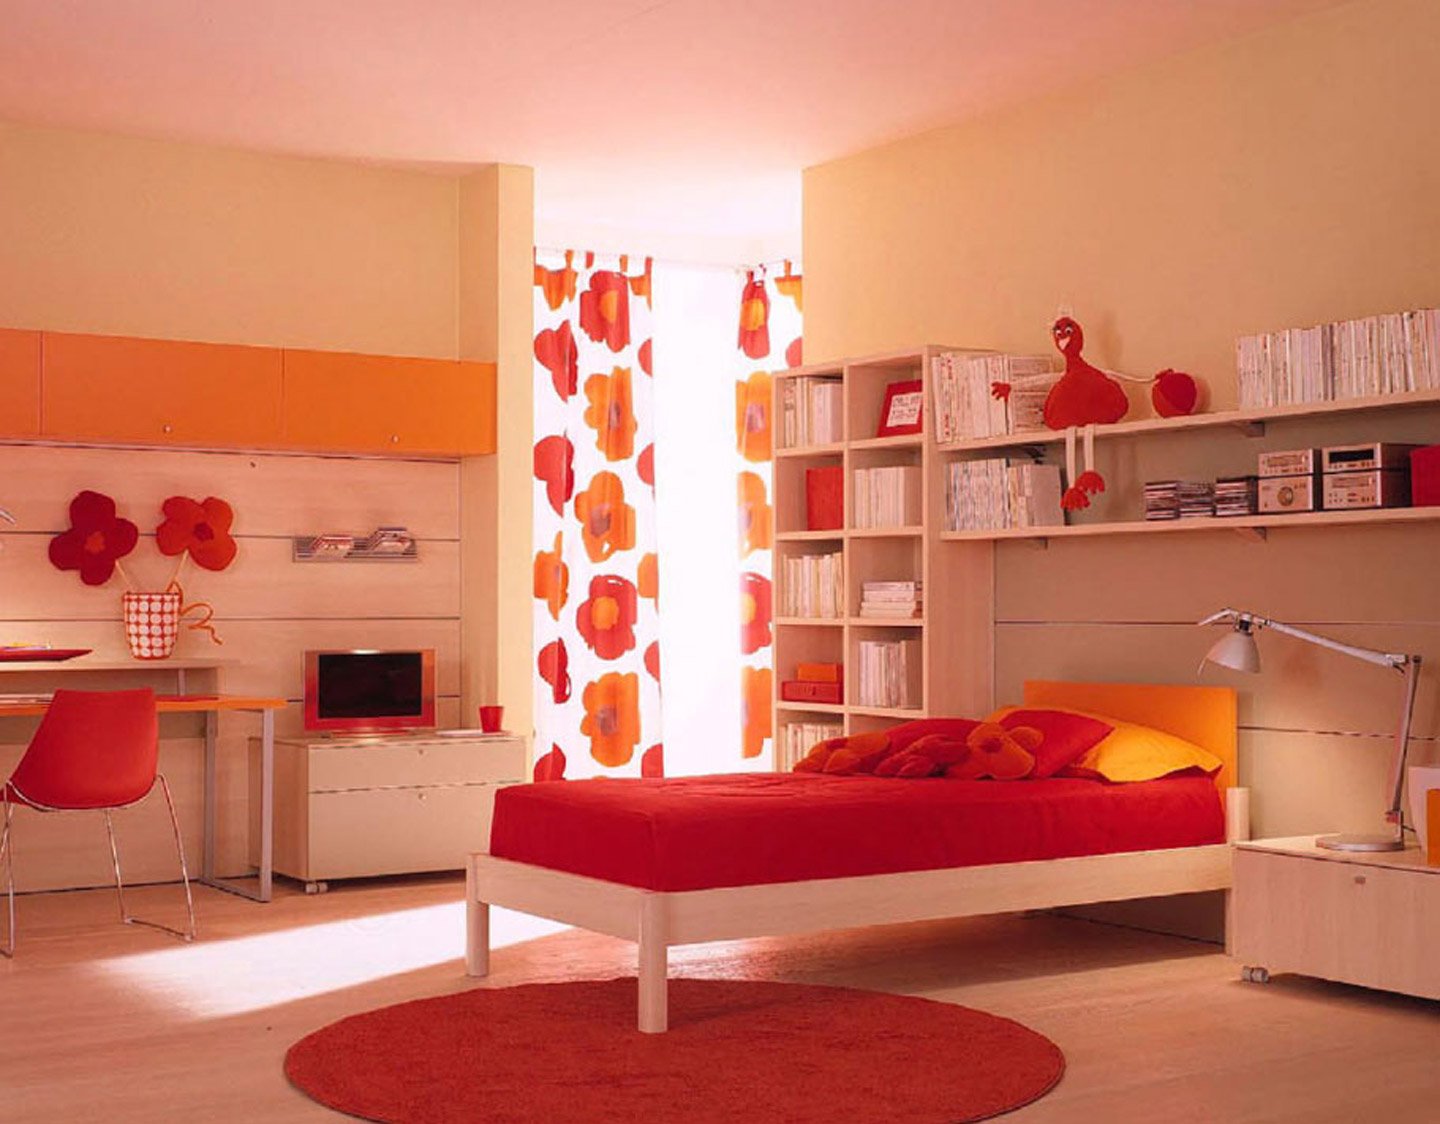 оранжевая мебель для детской